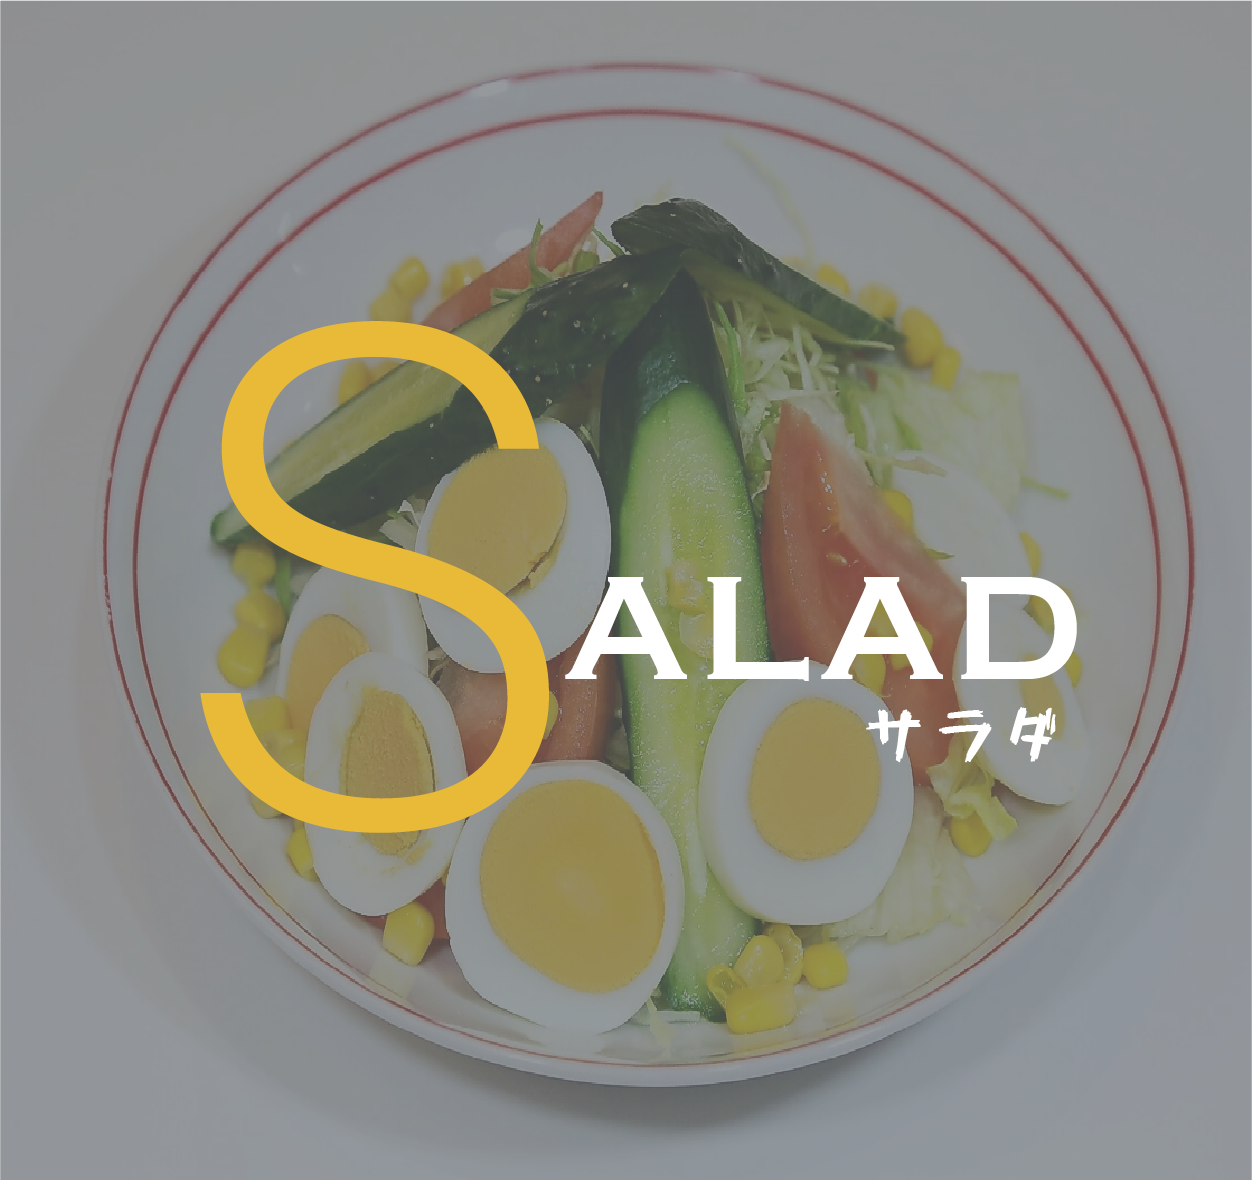 Salad Menu